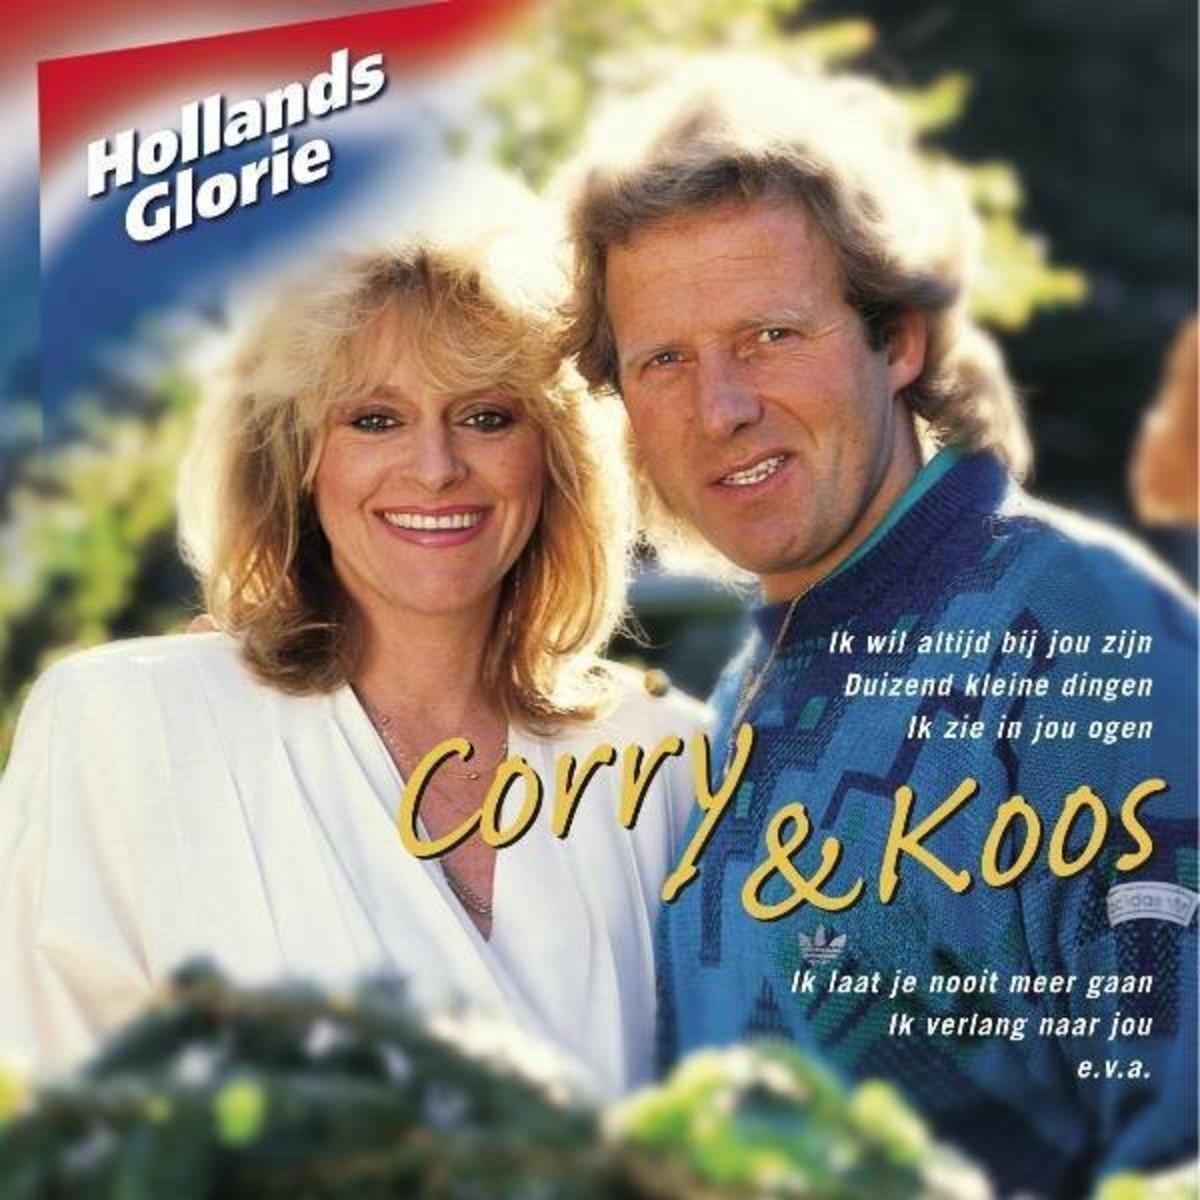 Hollands Glorie - Corry Konings & Koos Alberts (2006)